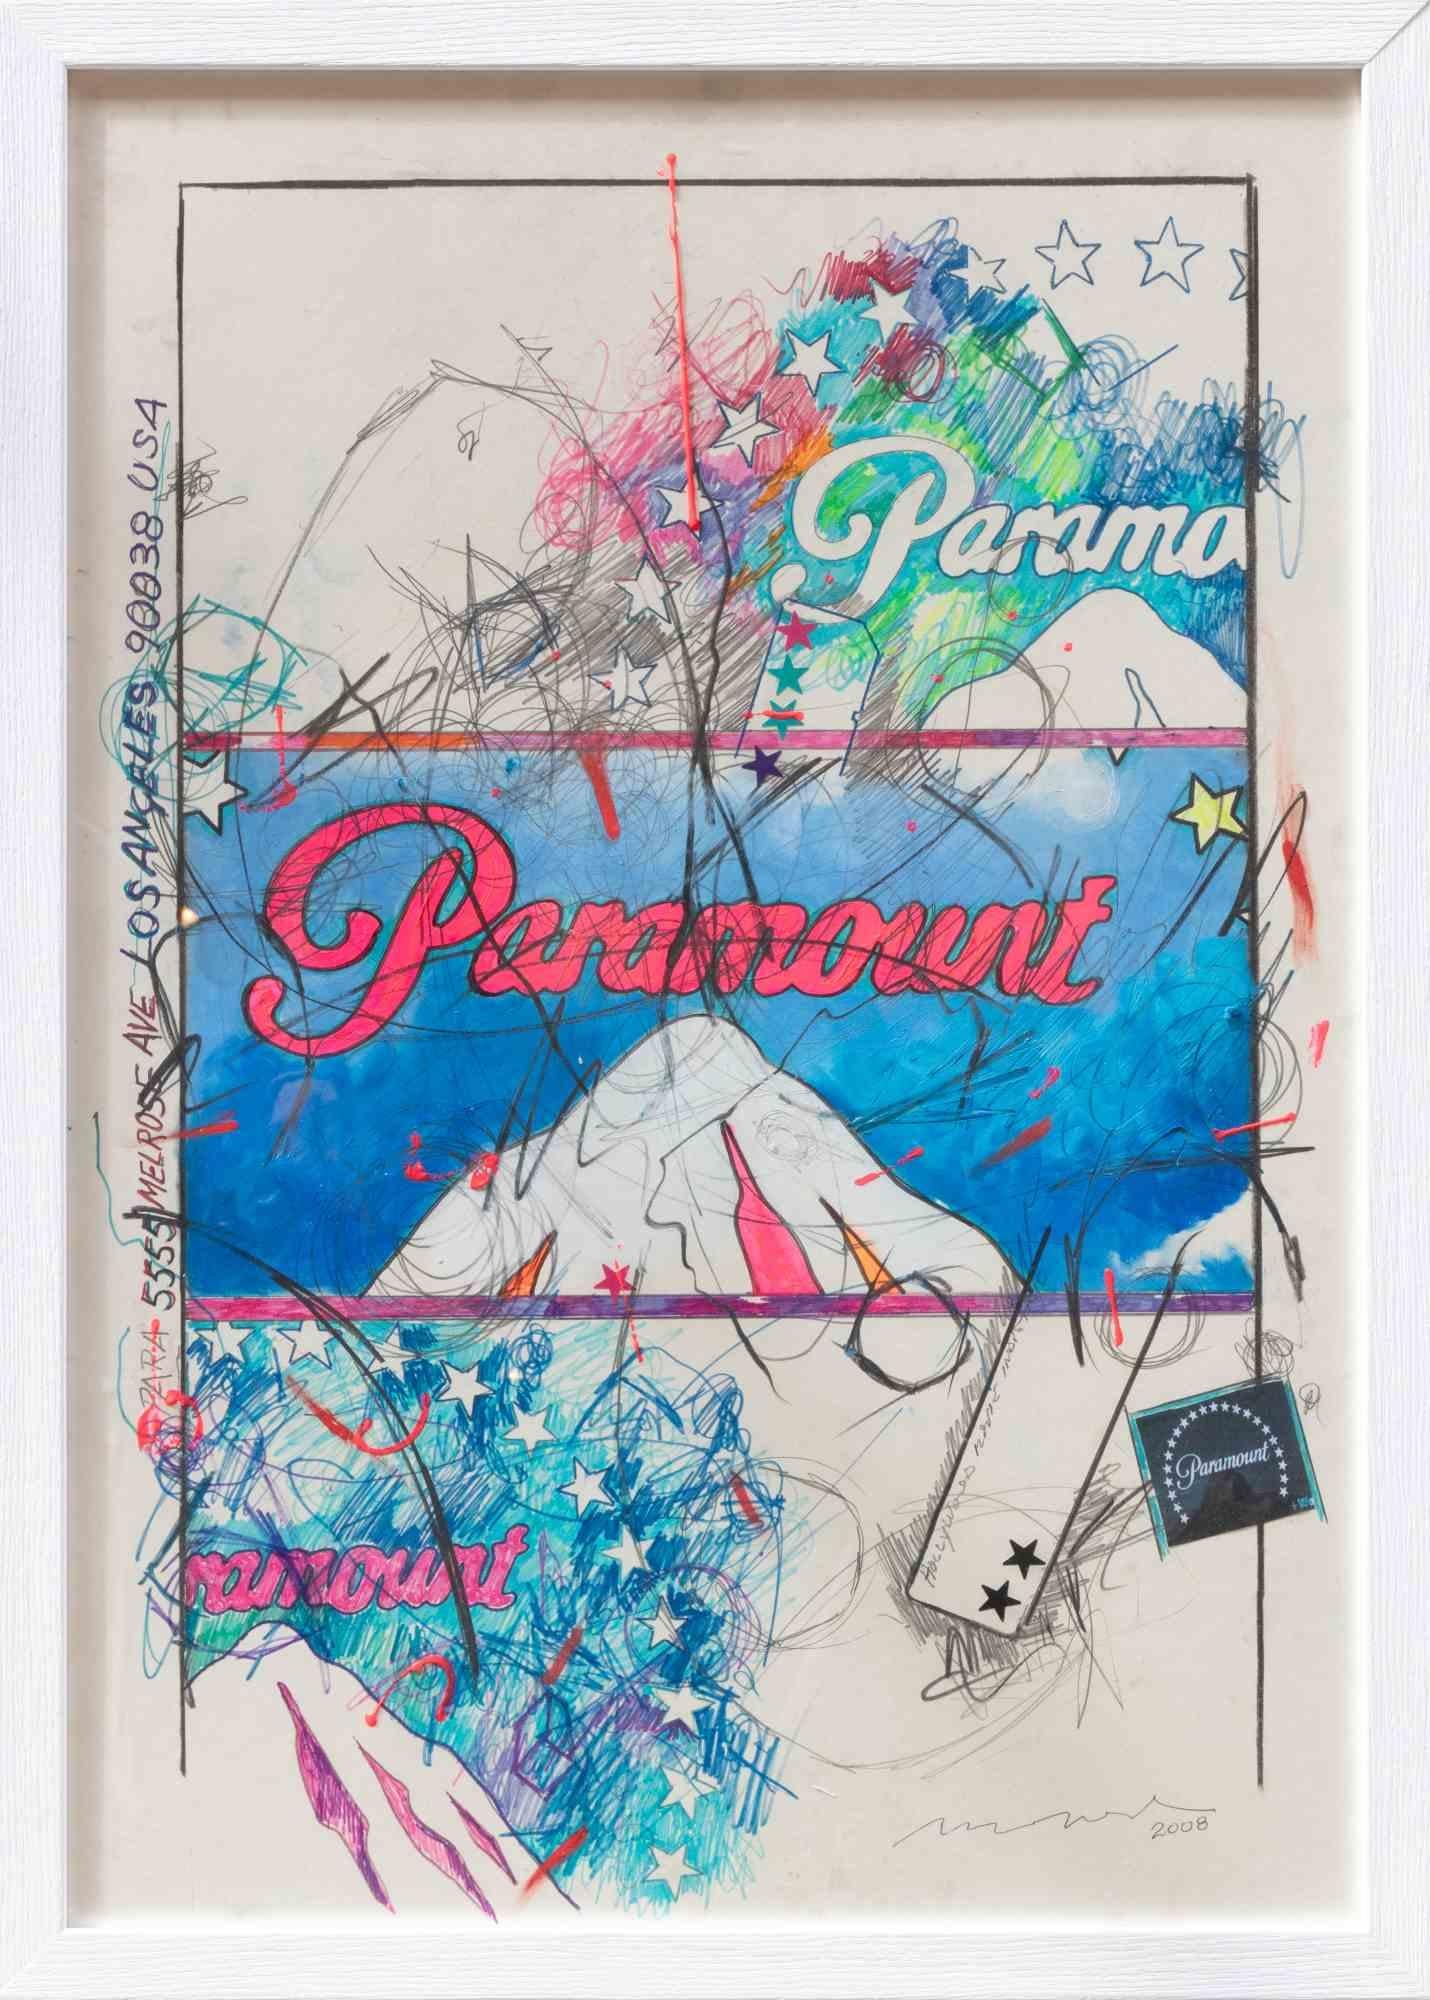 Paramount ist ein zeitgenössisches Kunstwerk von Enrico Manera aus dem Jahr 2008.

Gemischte Medien auf Papier.

Handsigniert und datiert am unteren Rand

Authentifizierungszertifikat des Künstlers auf dem Foto.